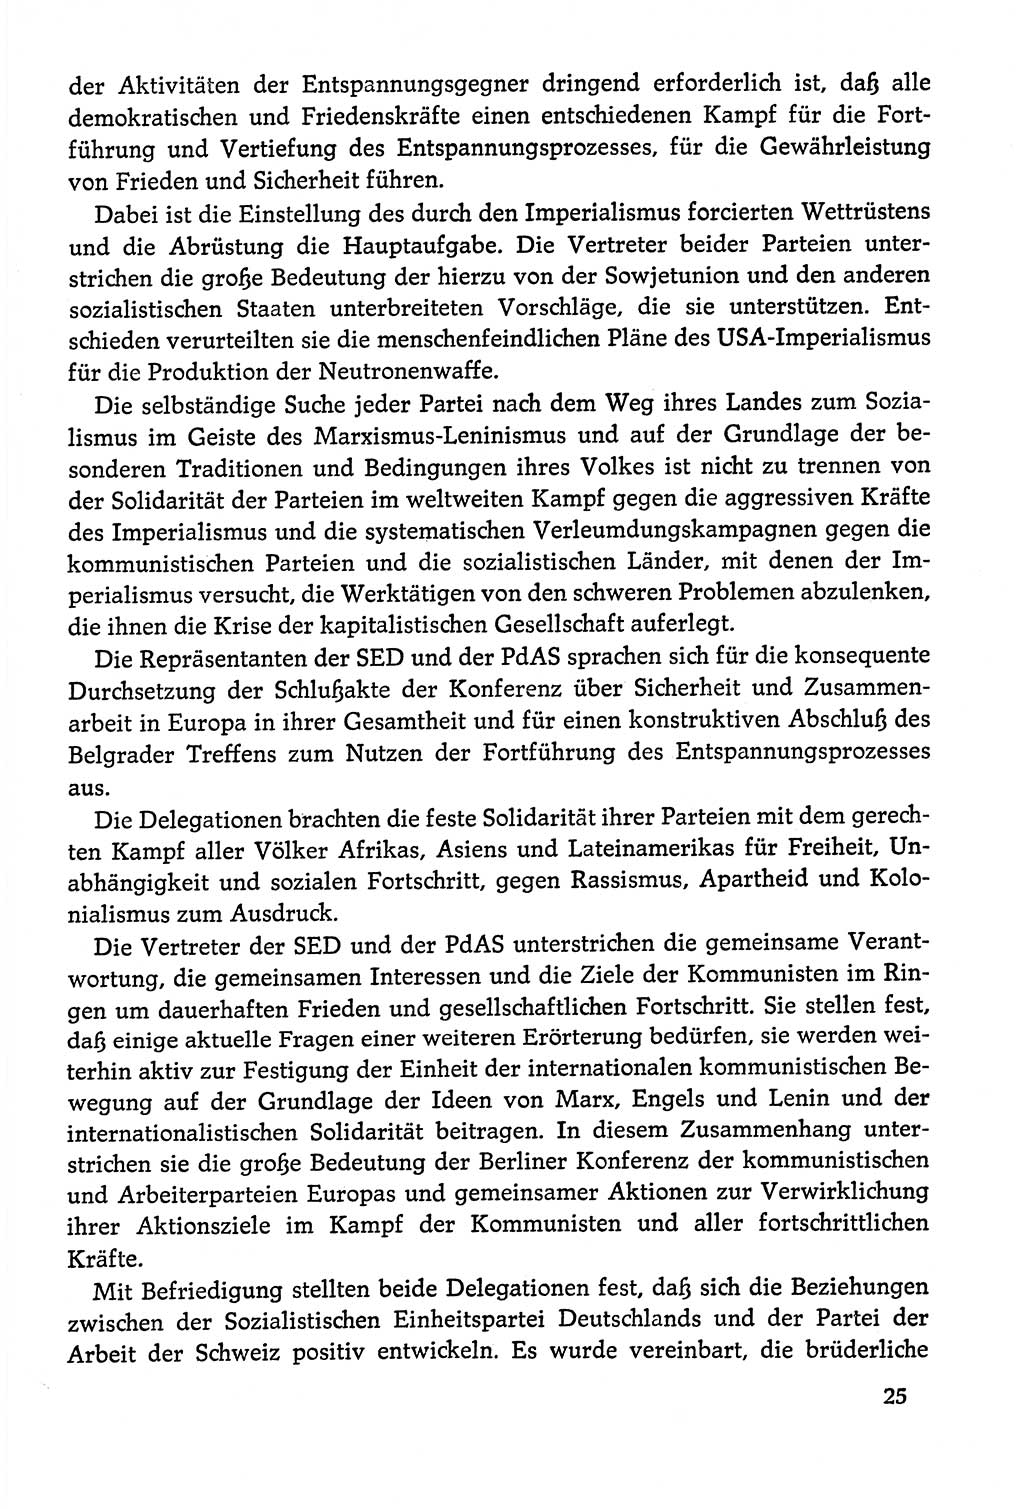 Dokumente der Sozialistischen Einheitspartei Deutschlands (SED) [Deutsche Demokratische Republik (DDR)] 1978-1979, Seite 25 (Dok. SED DDR 1978-1979, S. 25)